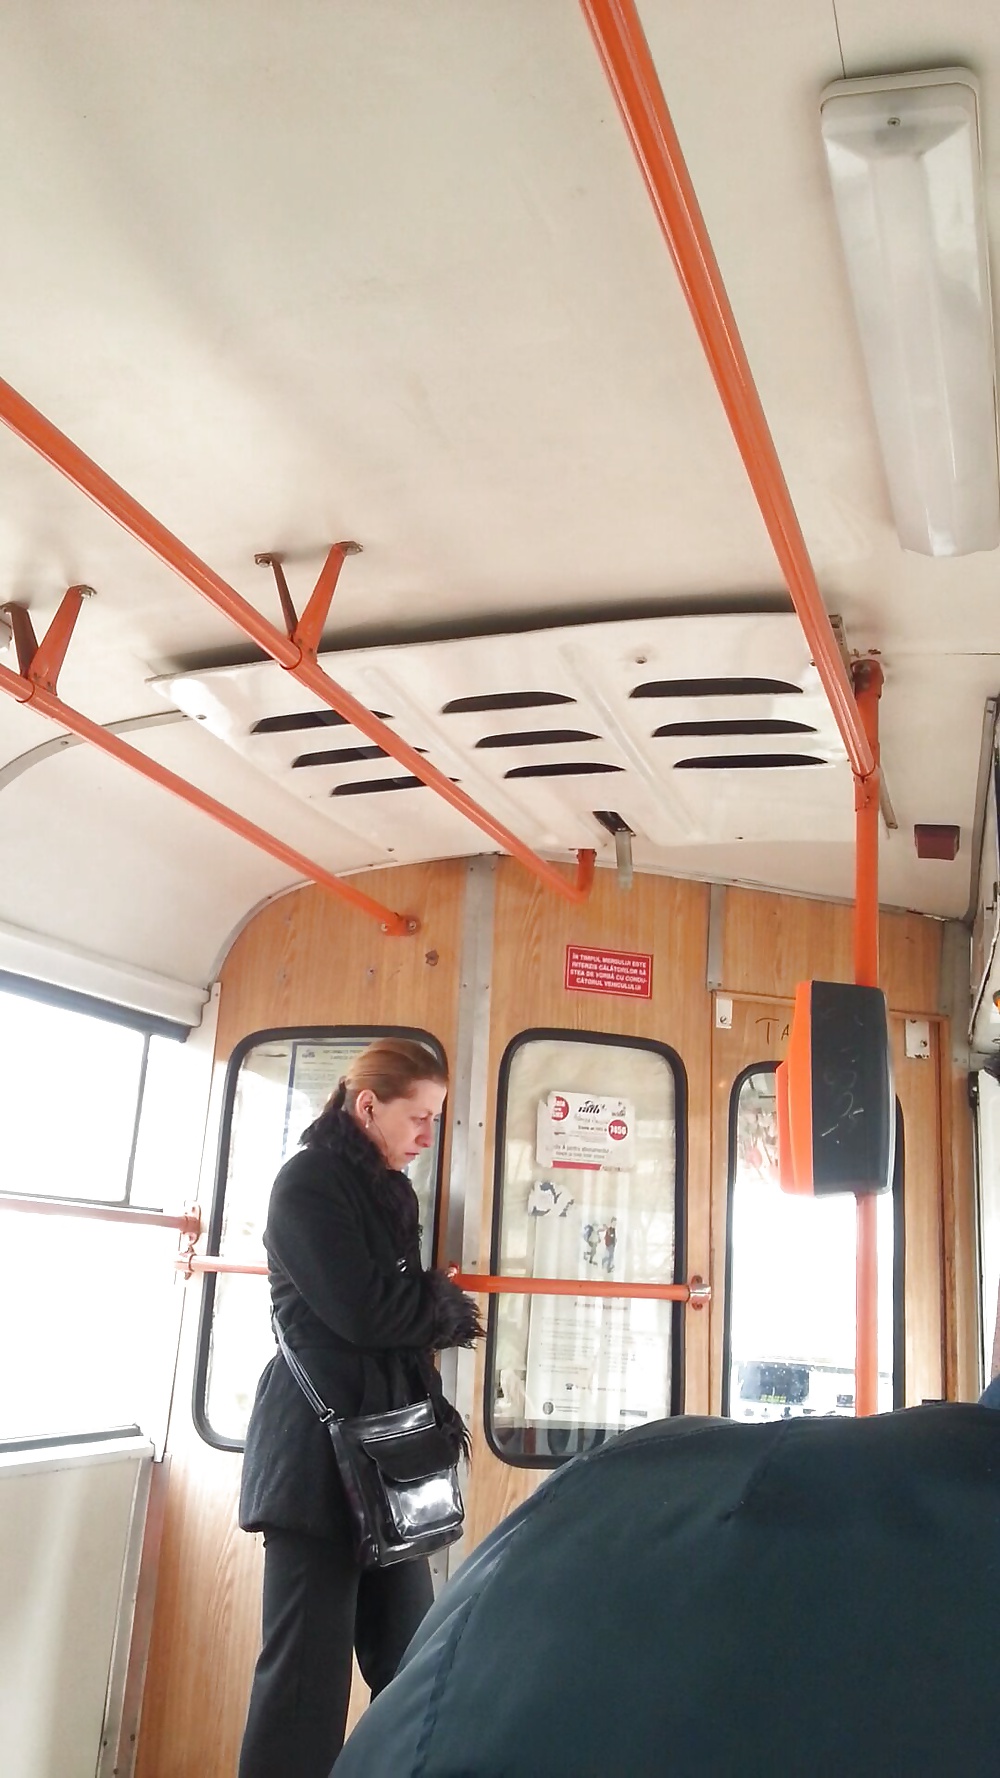 Spia vecchia + giovane in bus, tram e stazione rumena
 #35247883